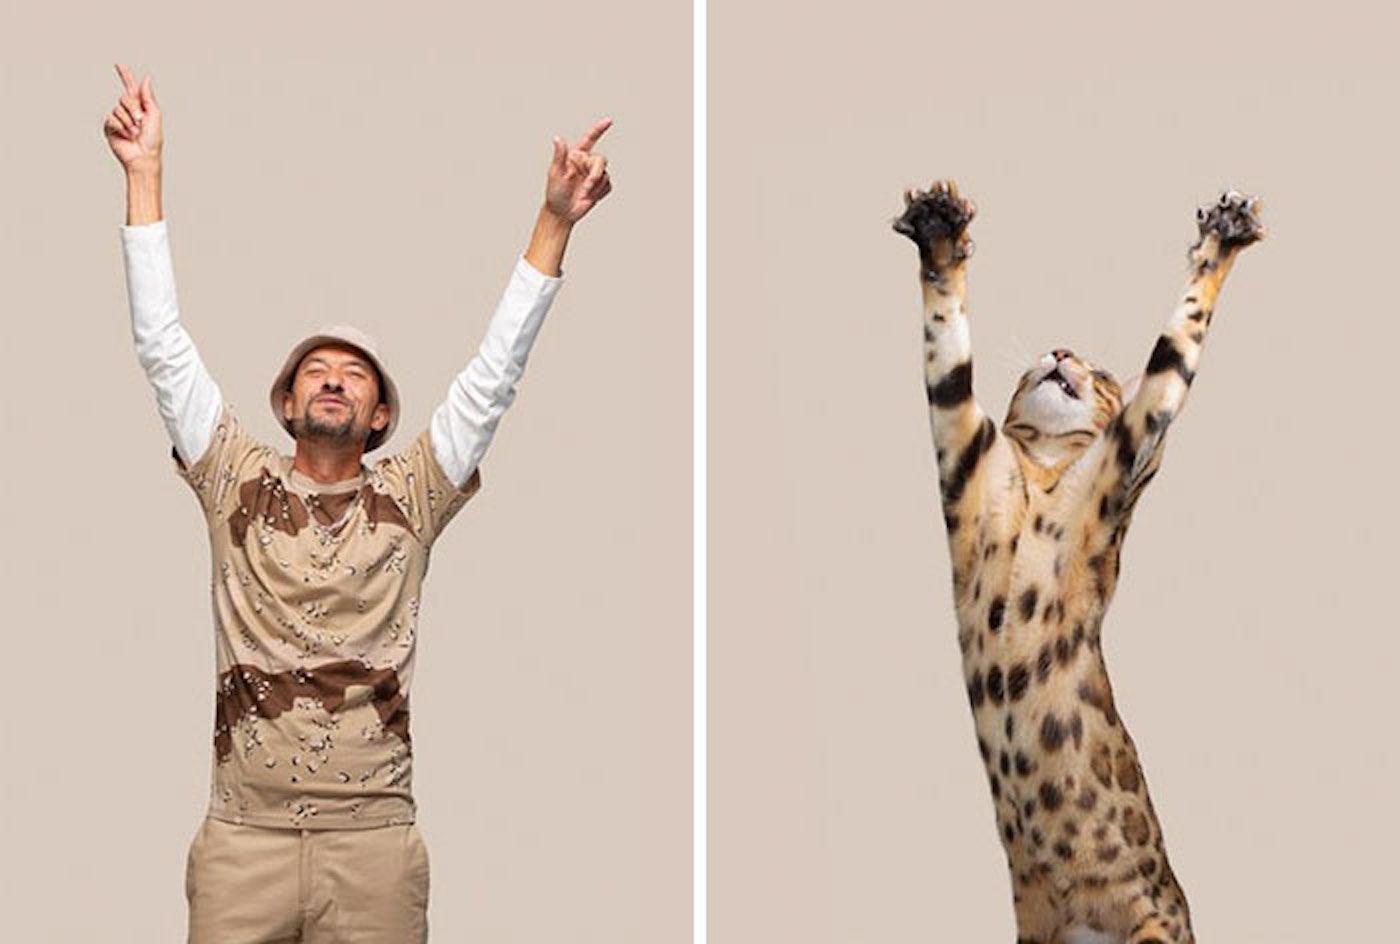 Le photographe Gerrard Gethings fait ressortir les ressemblances entre les chats et leurs maîtres